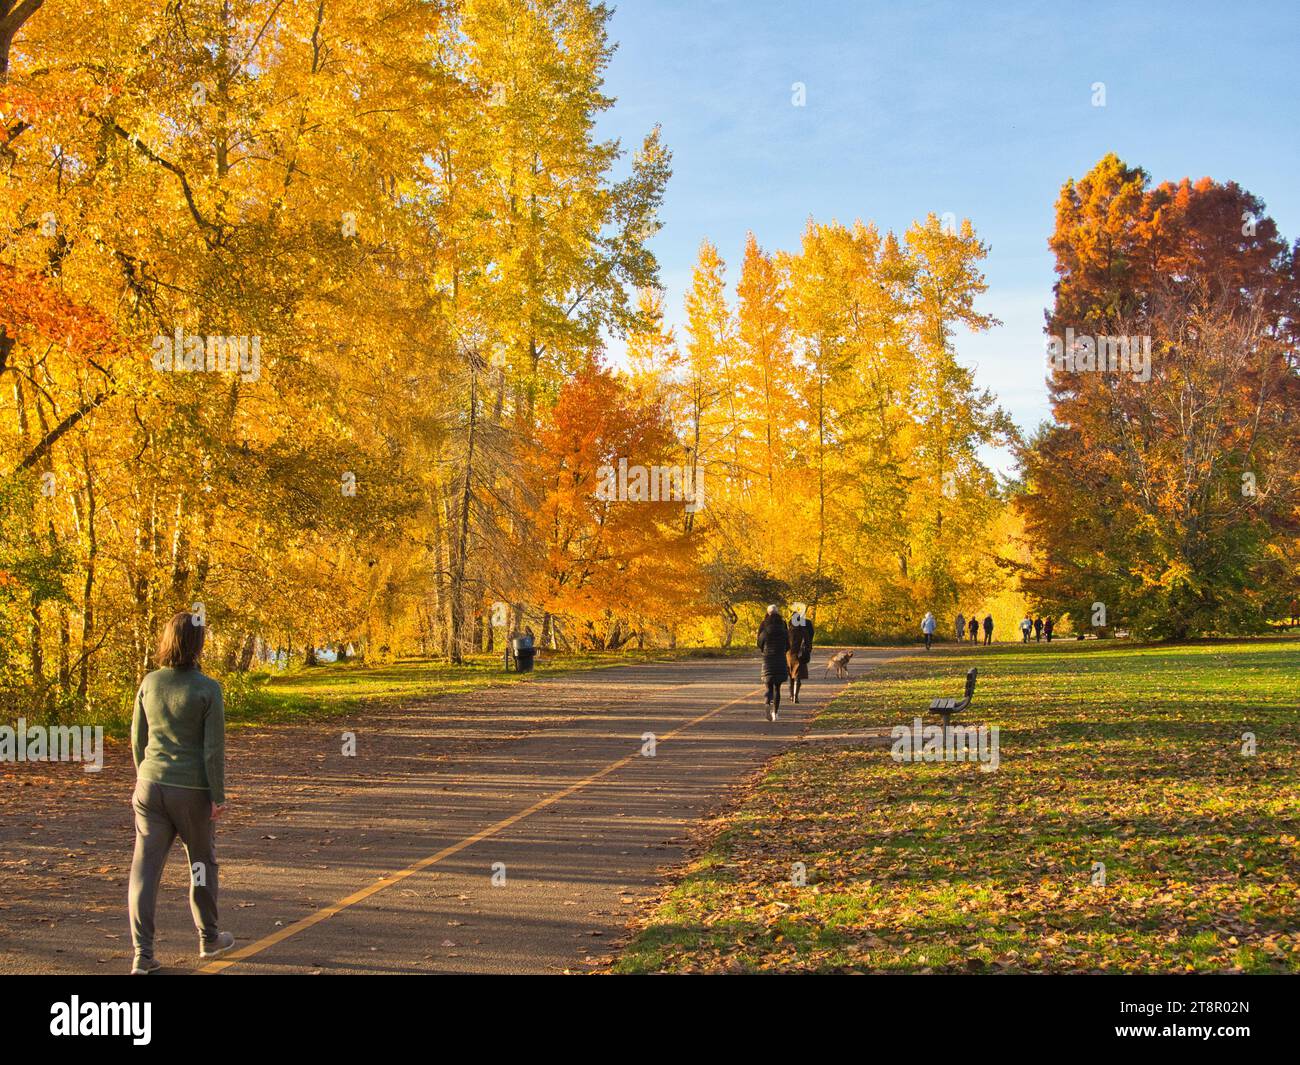 Wanderweg mit vorbeiziehenden Figuren, die an einem schönen sonnigen Tag in einem Stadtpark mit gelbem und orangefarbenem Laub zur goldenen Stunde spazieren gehen. Stockfoto